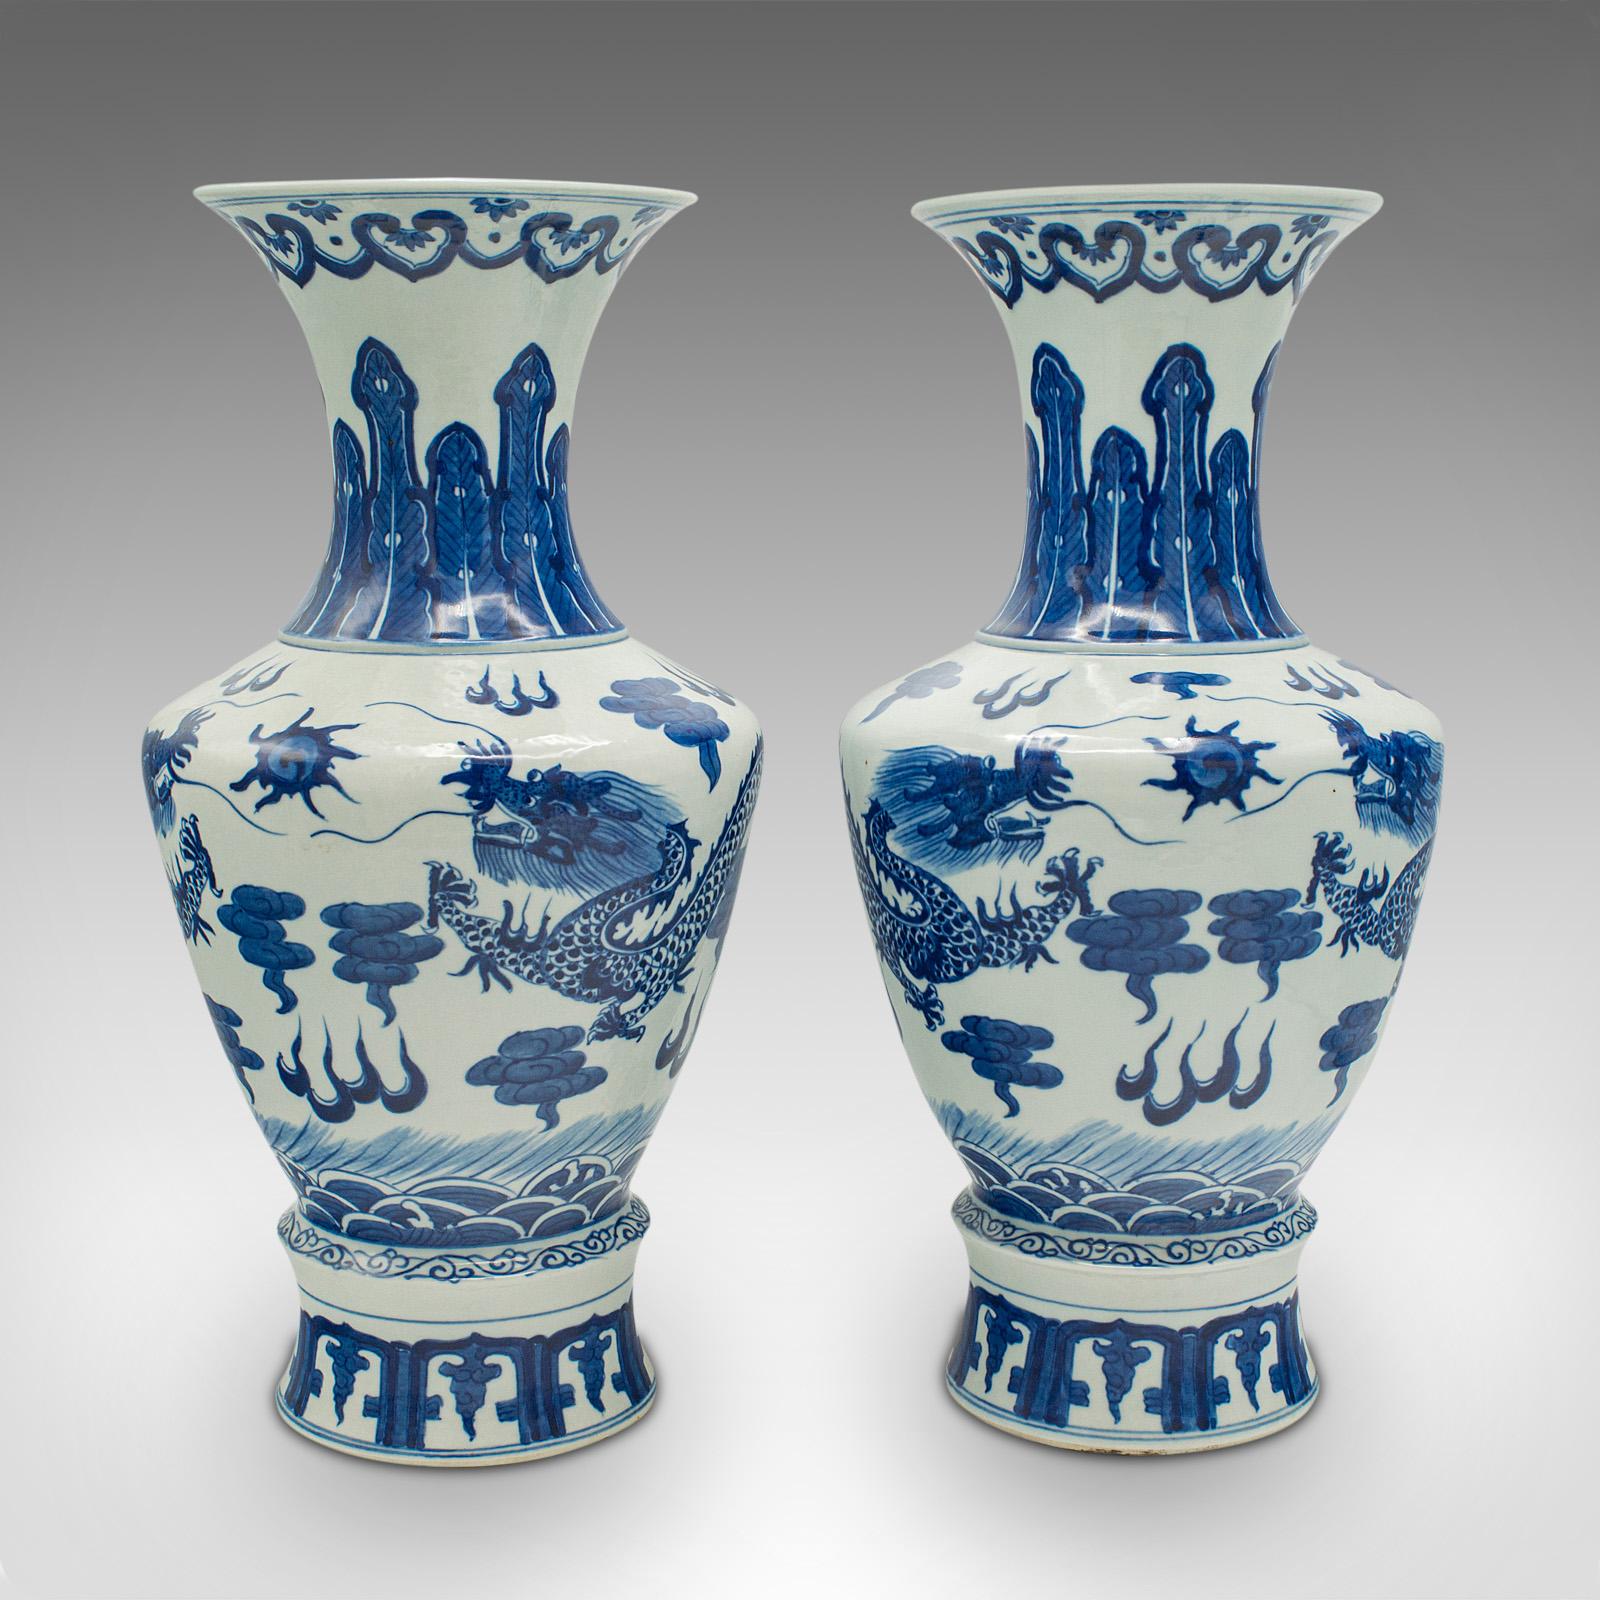 Il s'agit d'une paire de vases balustres vintage. Urne décorative chinoise en céramique, datant de la fin de la période Art déco, vers 1940.

Icône de la finition blanche et bleue.
Patine d'ancienneté souhaitable, sans marques ni fissures.
La